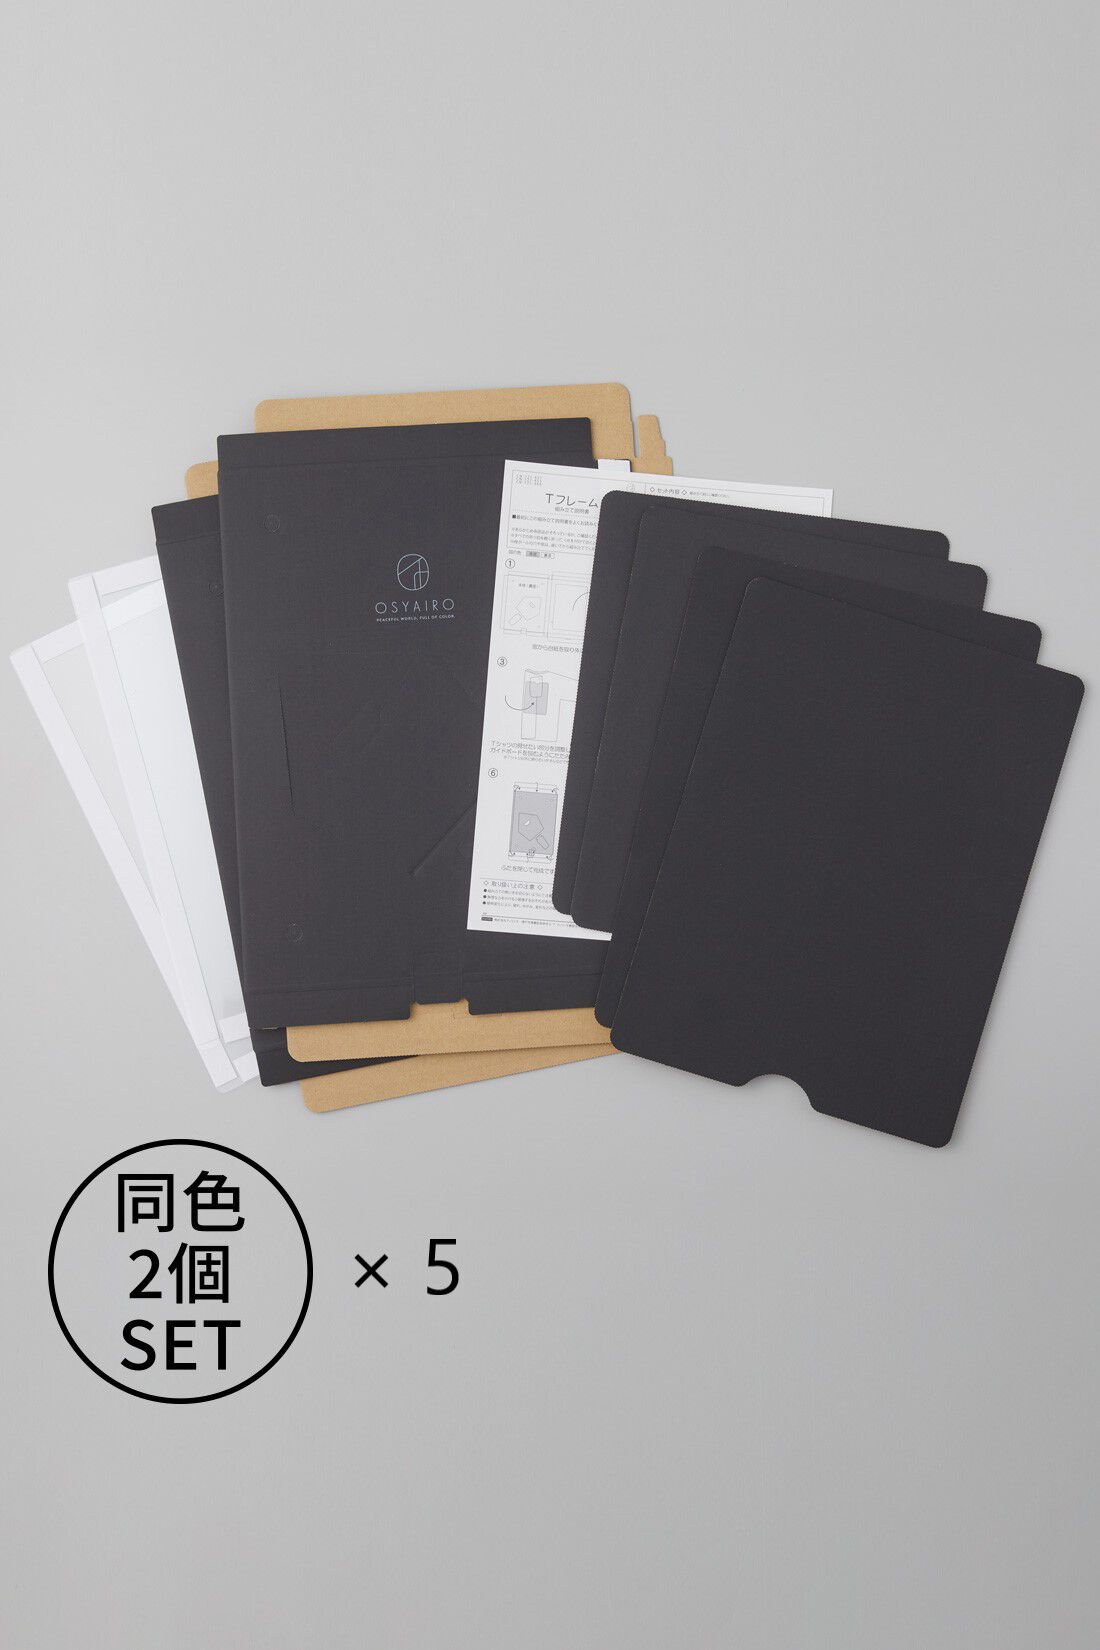 OSYAIRO|OSYAIRO  推しを飾って収納できるTフレーム〈ブラック〉10個セット|簡単な組み立て式の２個セットをさらに5個セットにして合計10個のお得セット！Tシャツをきれいにたたむためのガイドボードも付いています。